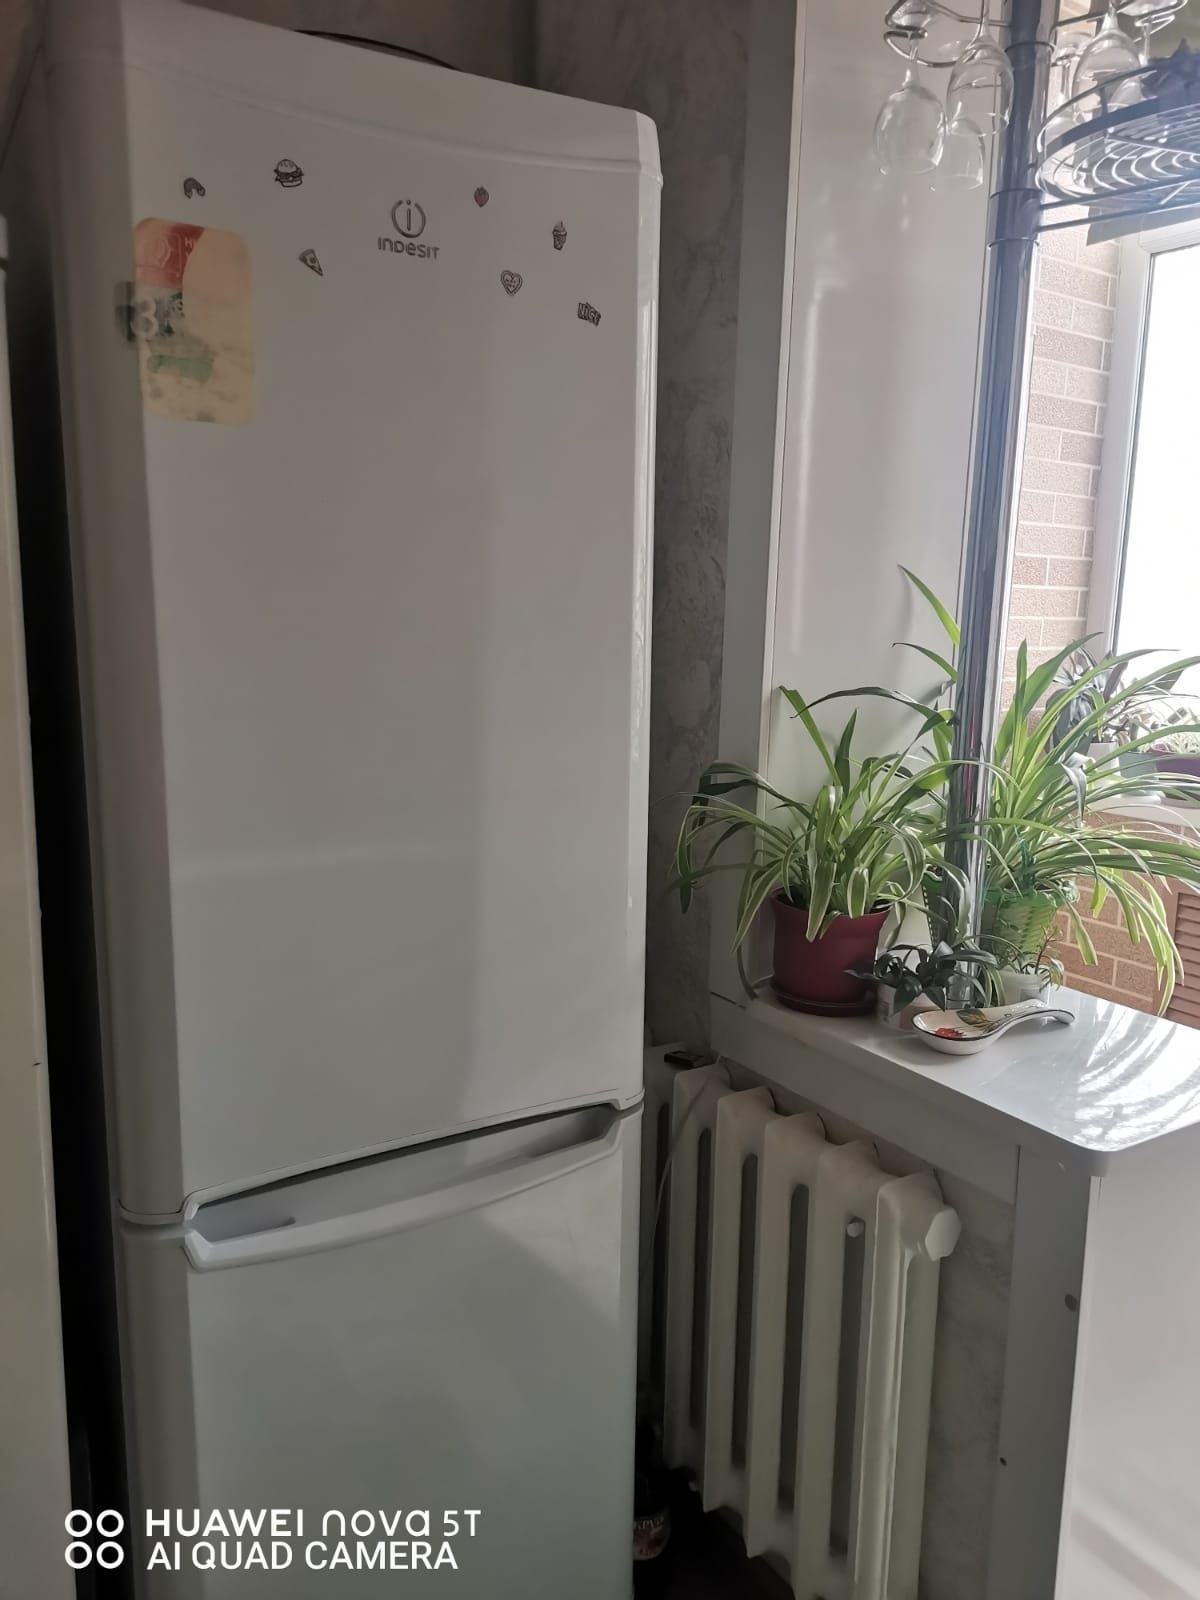 Продам Индезит холодильник